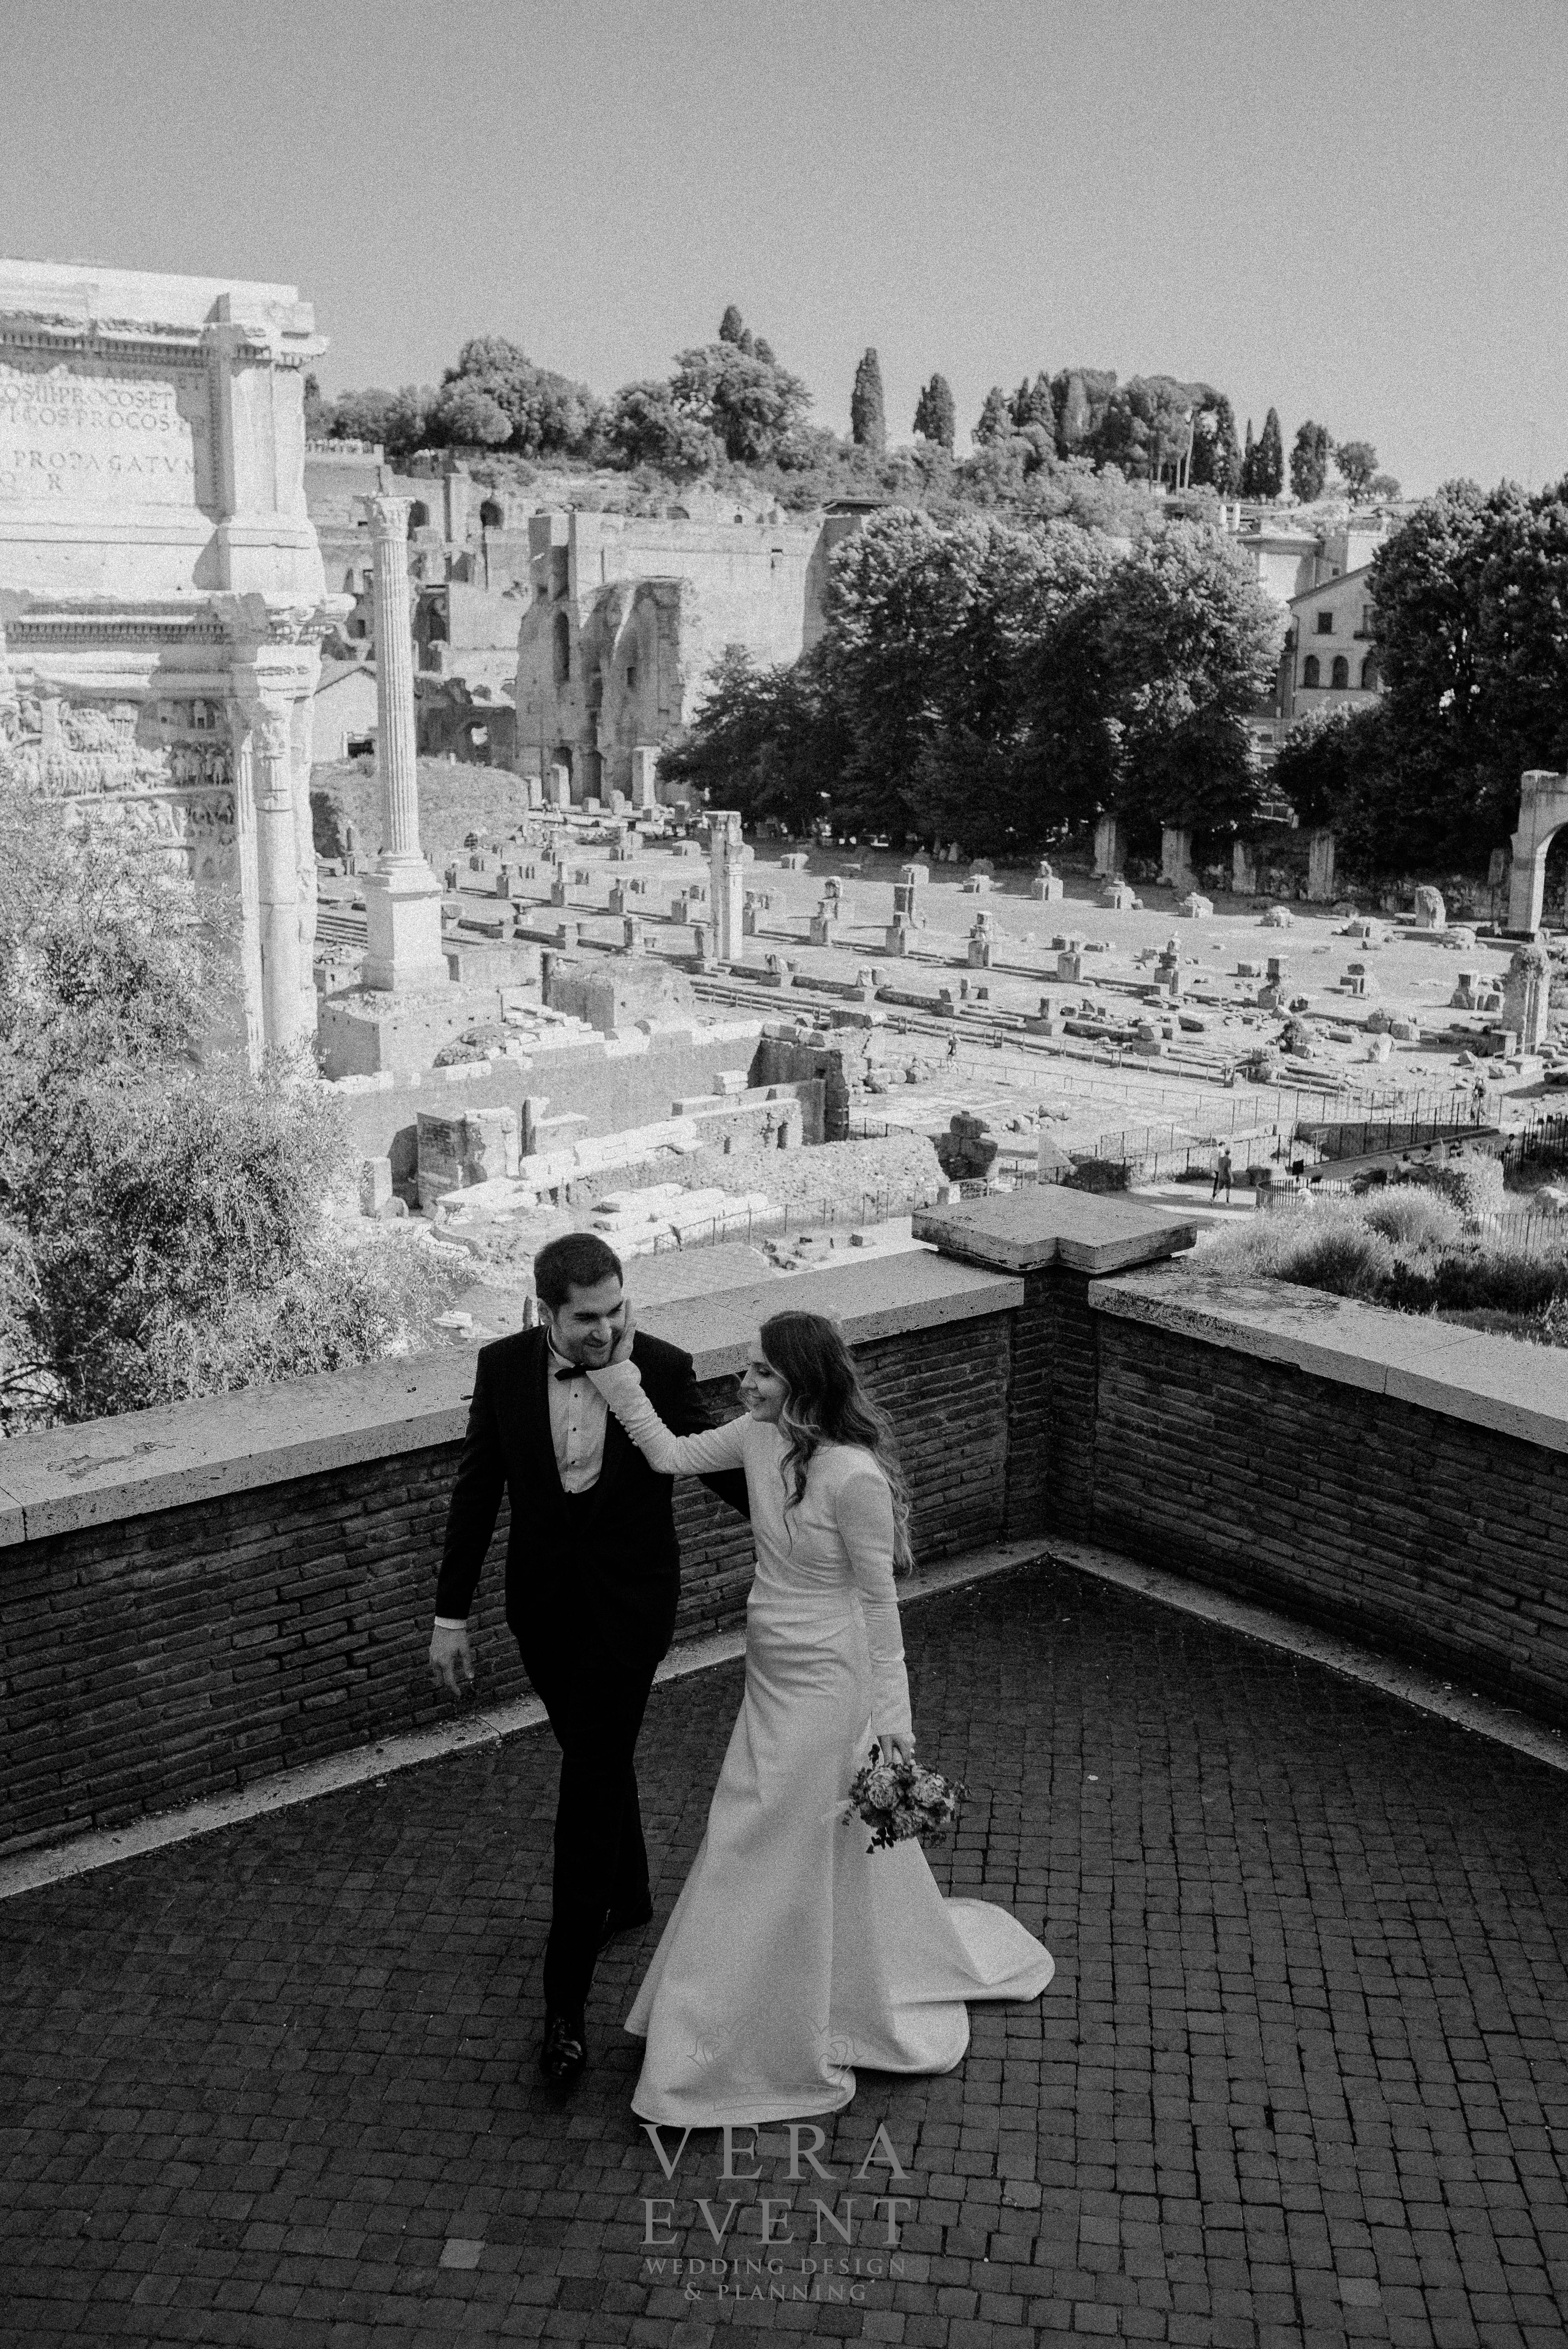 Zeynep & Kaan #yurtdışında düğün #roma'da düğün